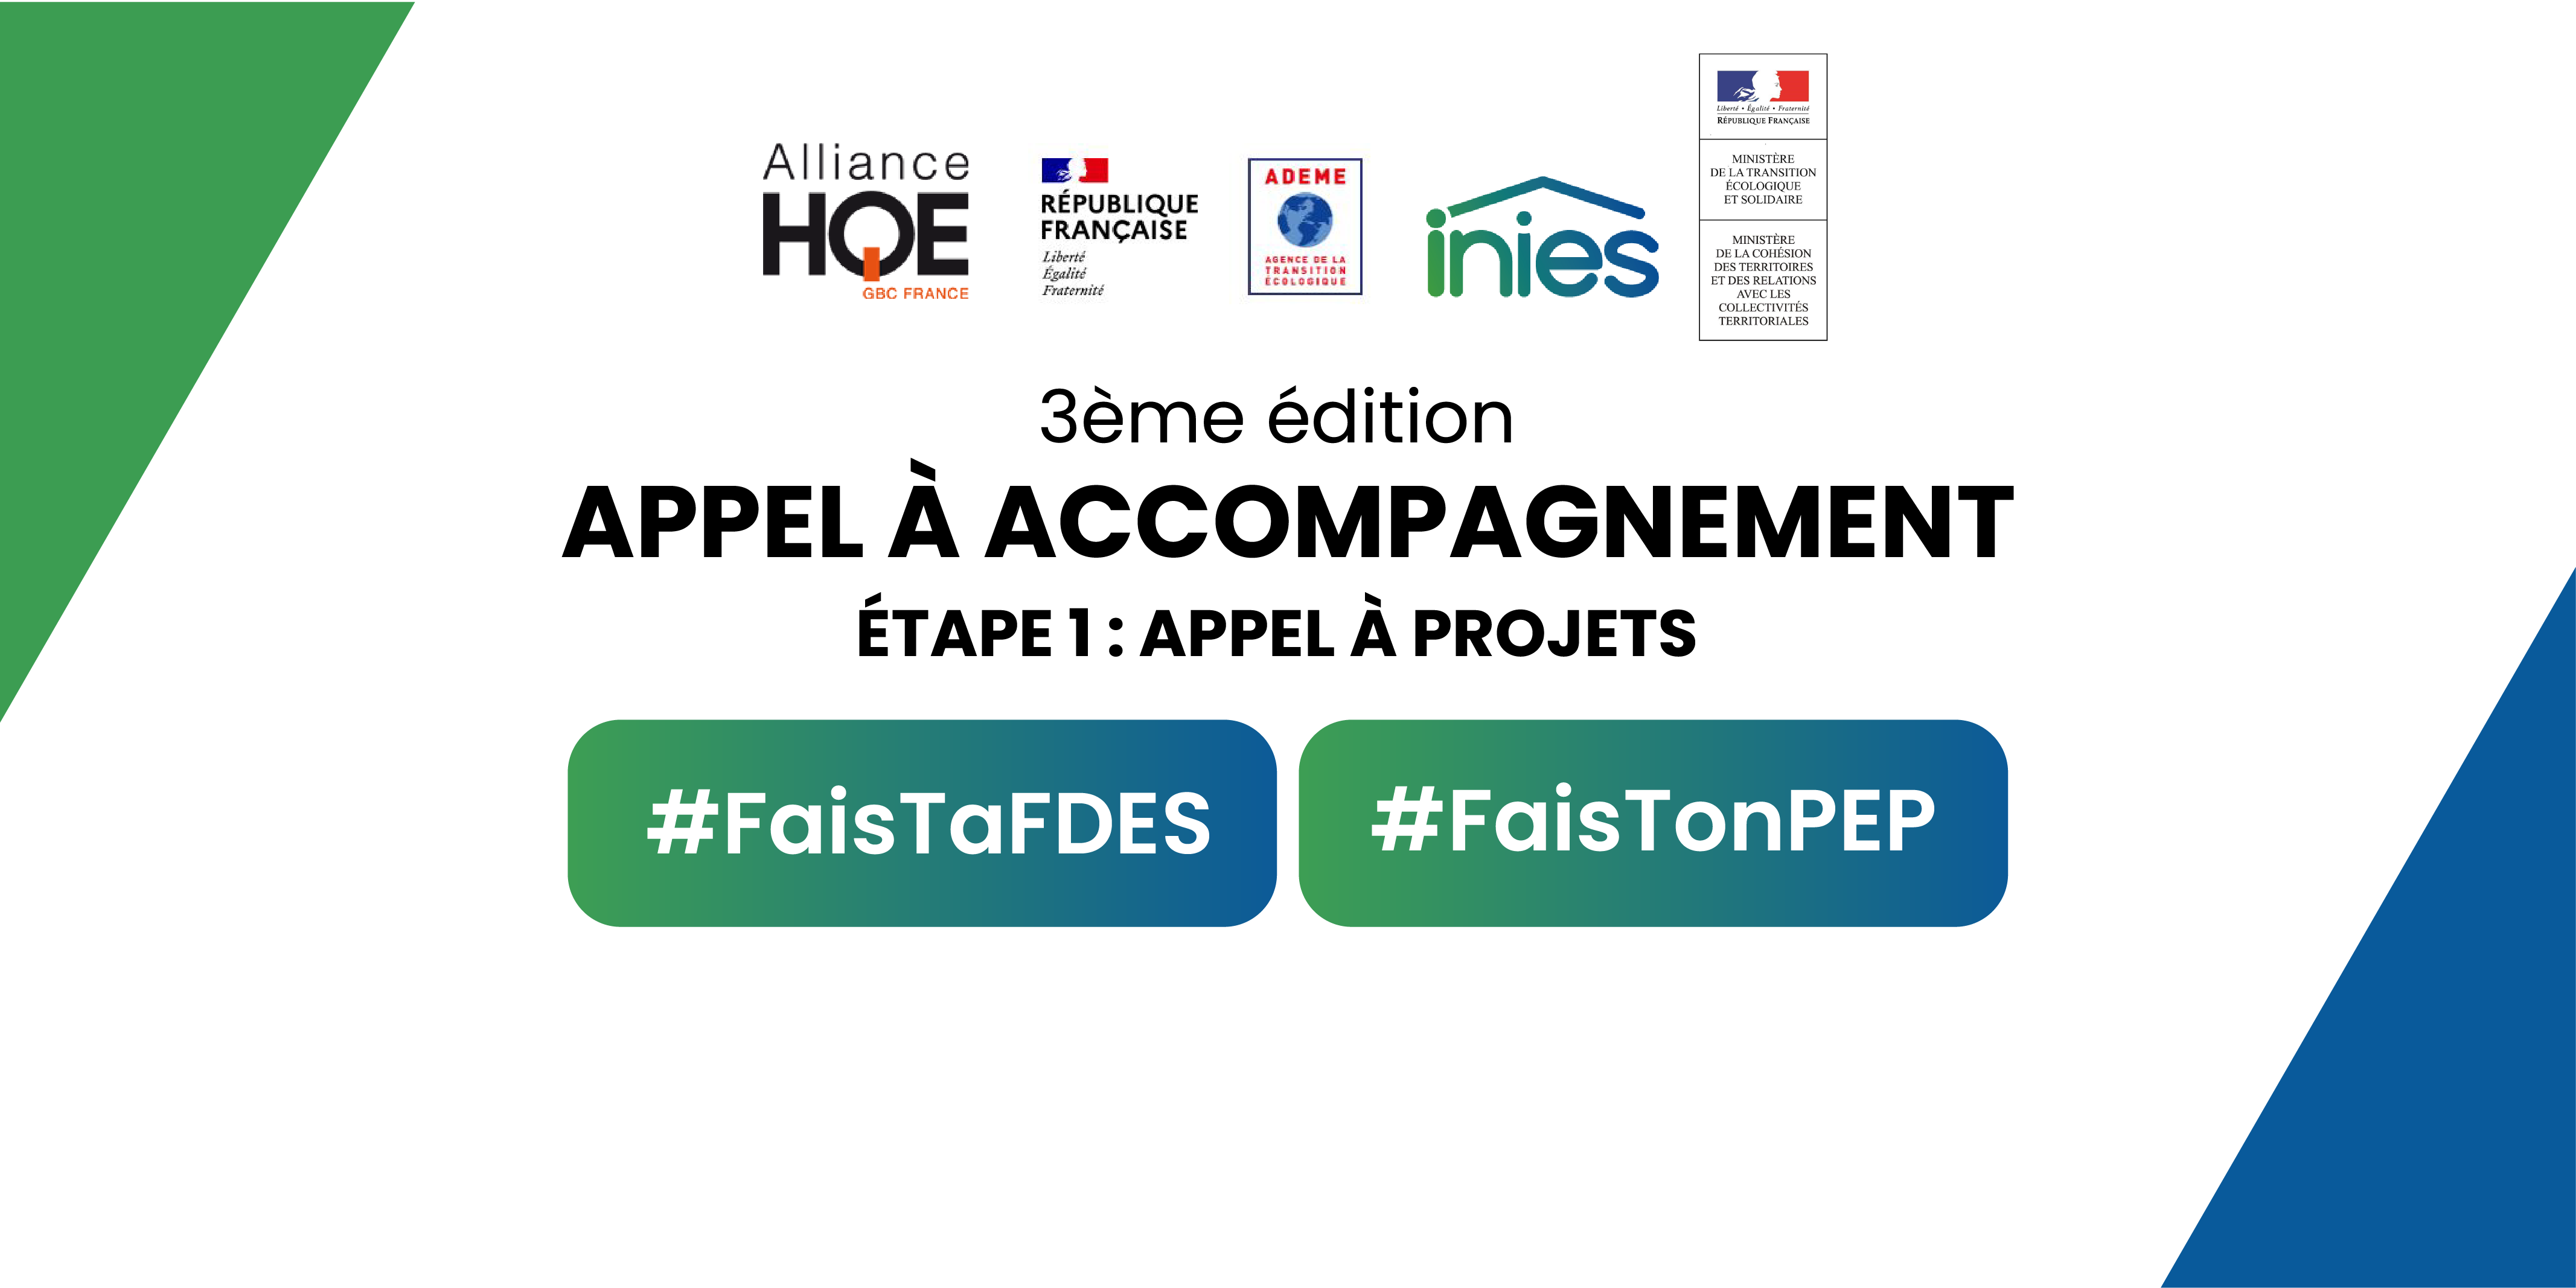 L’Alliance HQE-GBC lance la 3ème édition de l’Appel à accompagnement  #FaistaFdes #FaistonPep